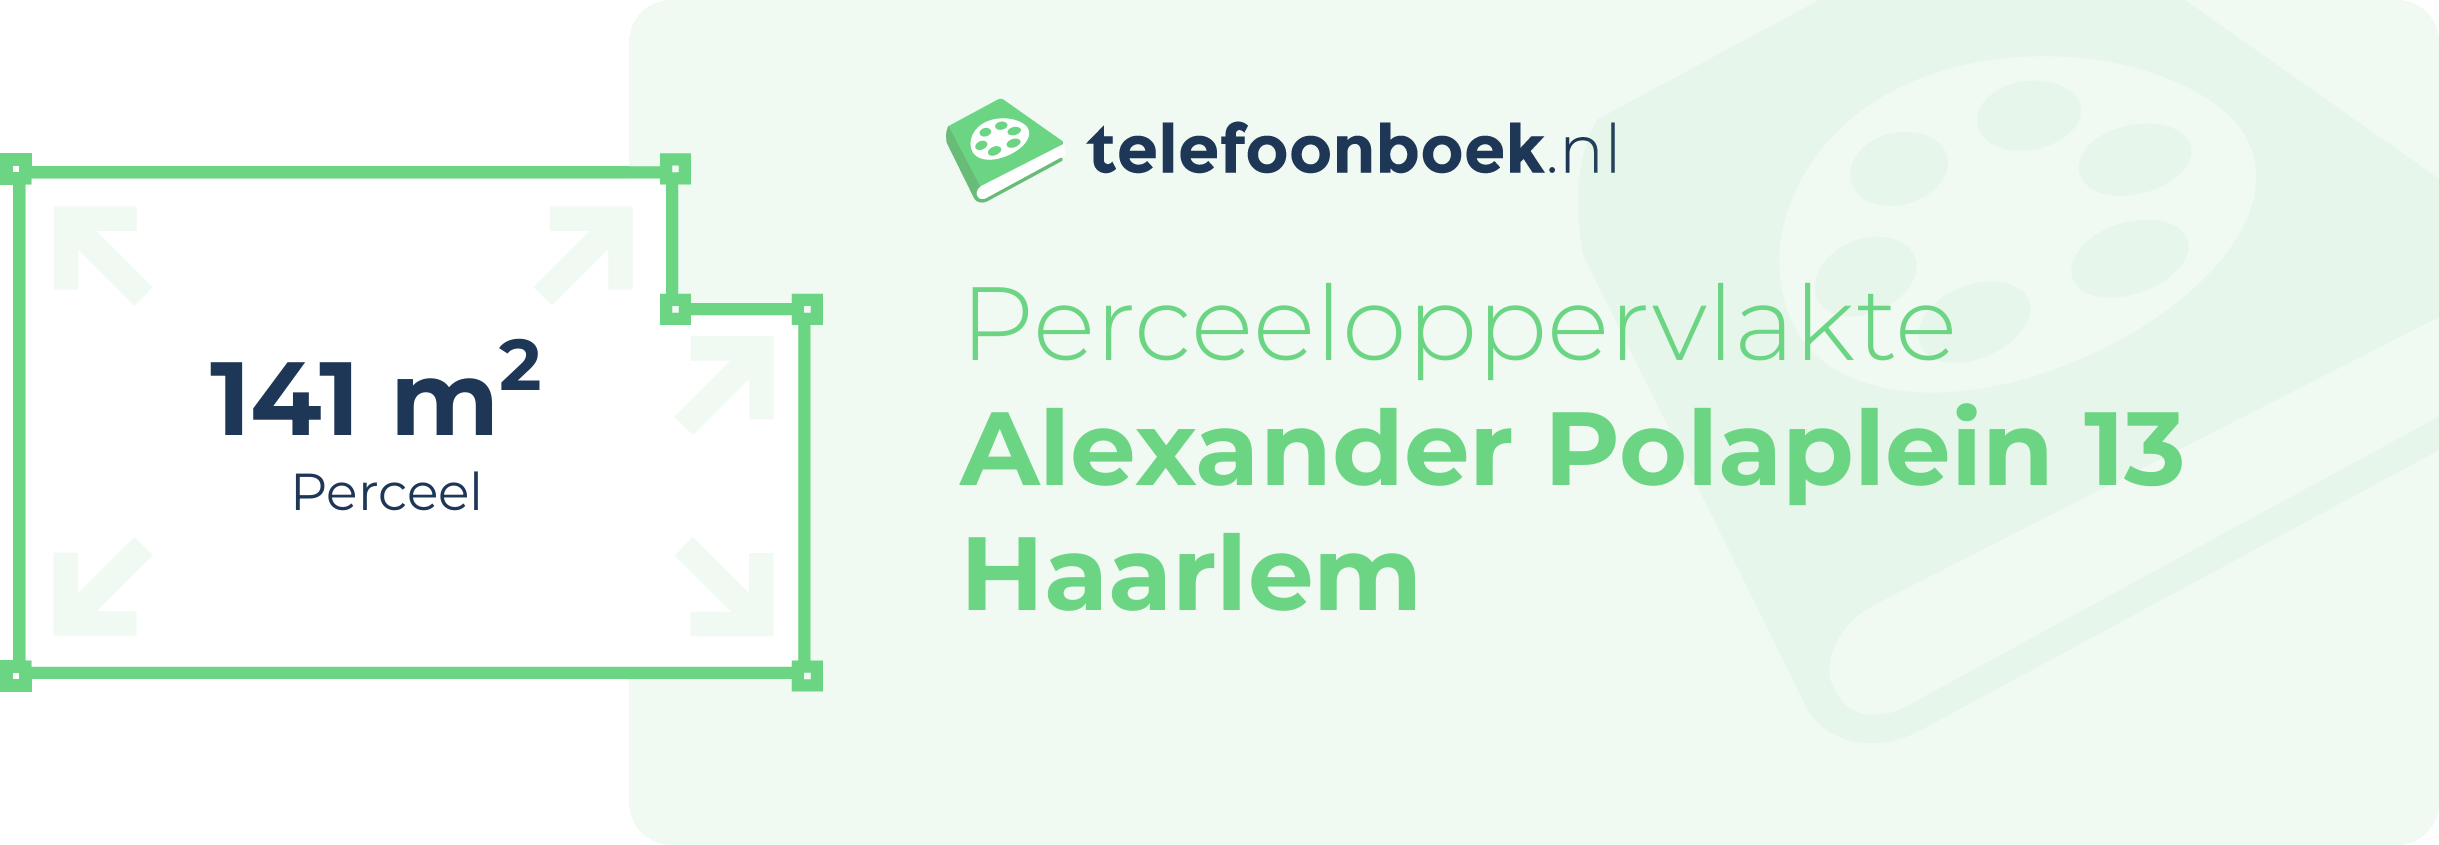 Perceeloppervlakte Alexander Polaplein 13 Haarlem